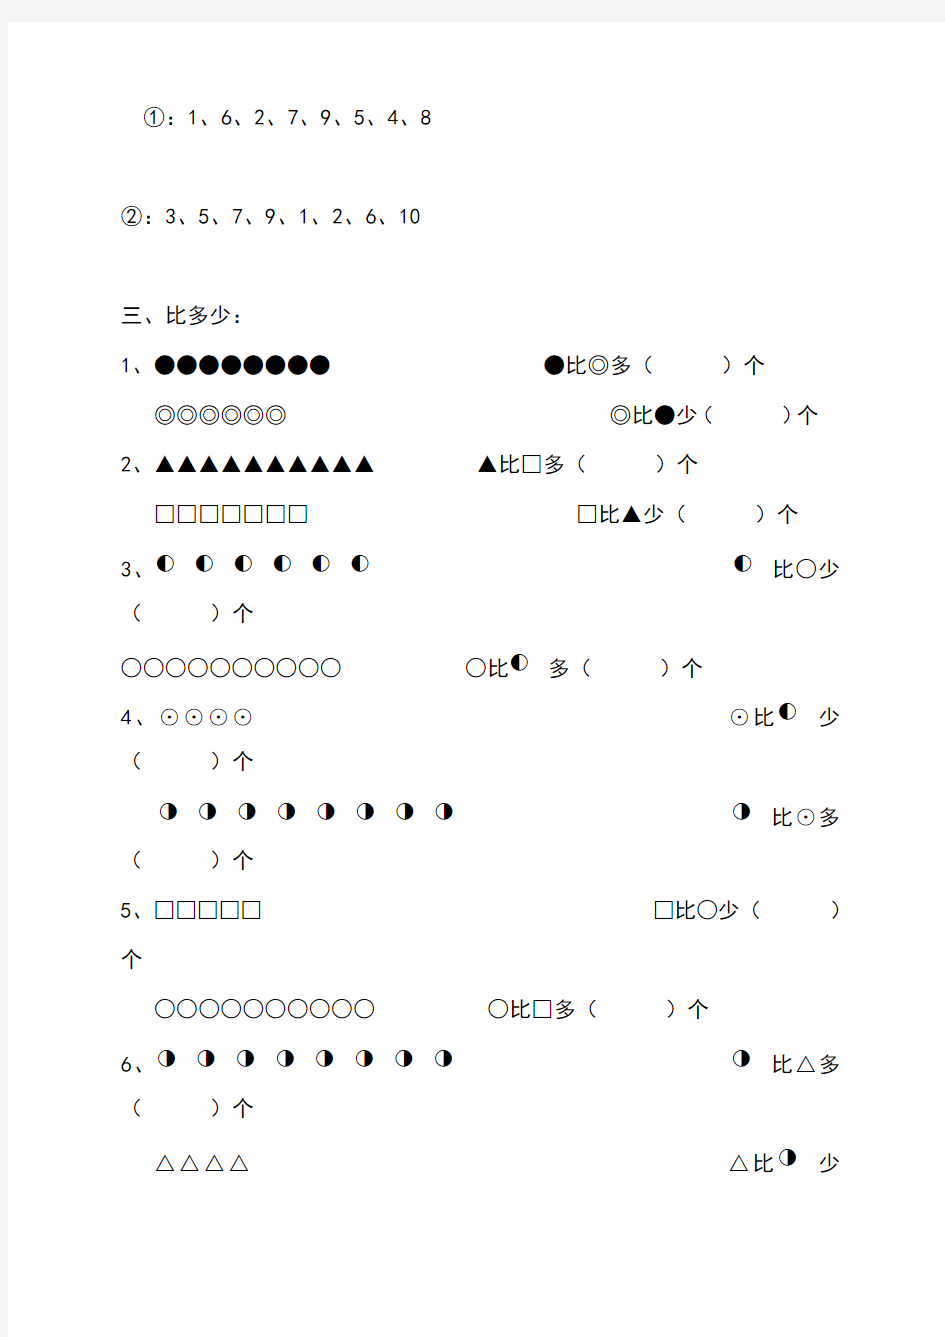 幼儿园大班数学练习题(直接打印版)